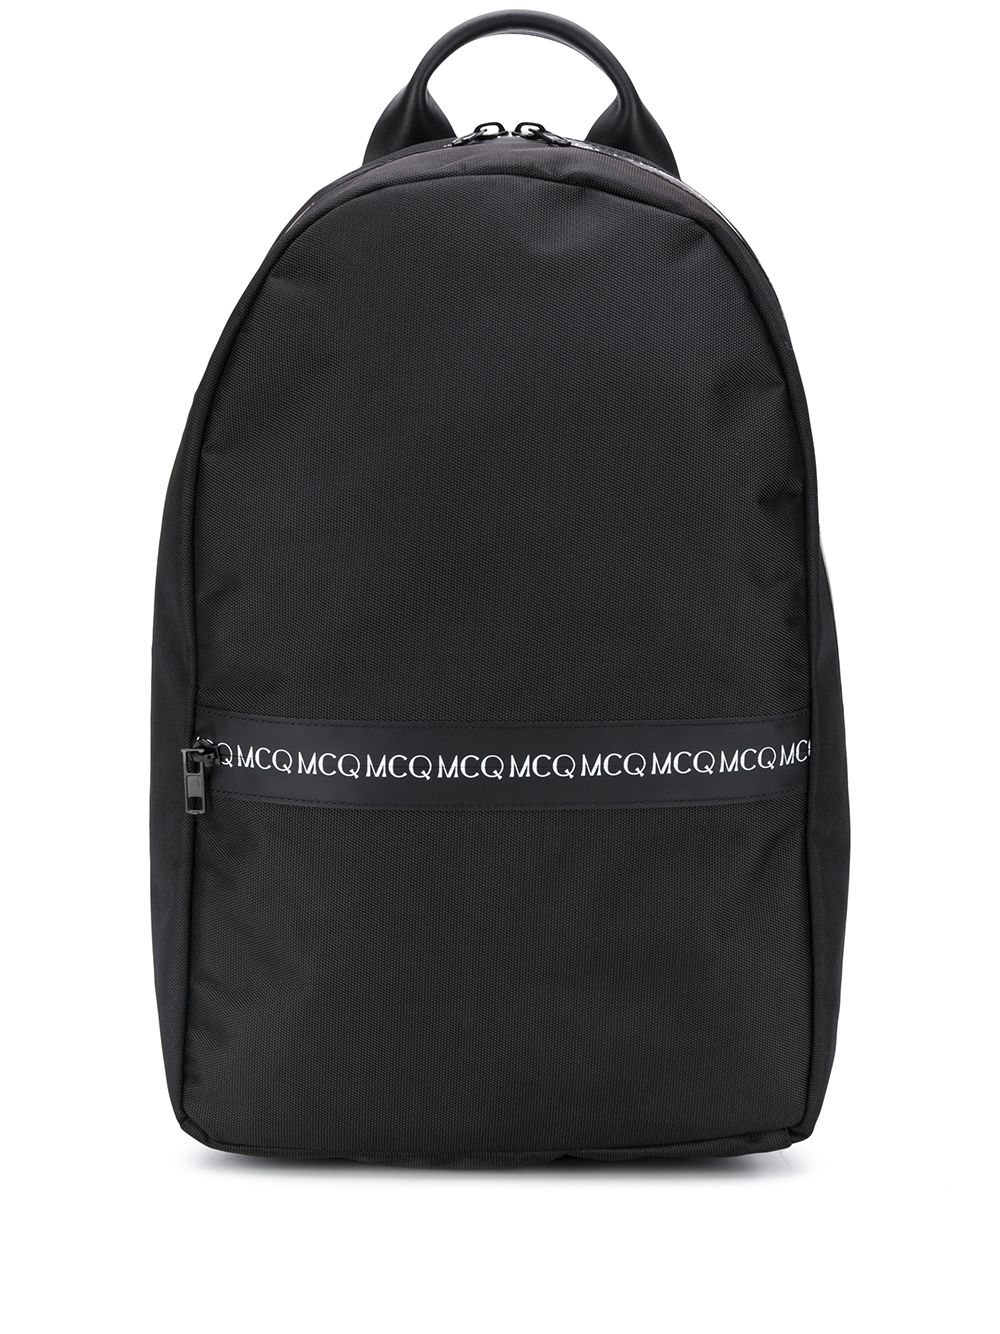 фото Mcq swallow рюкзак с логотипом